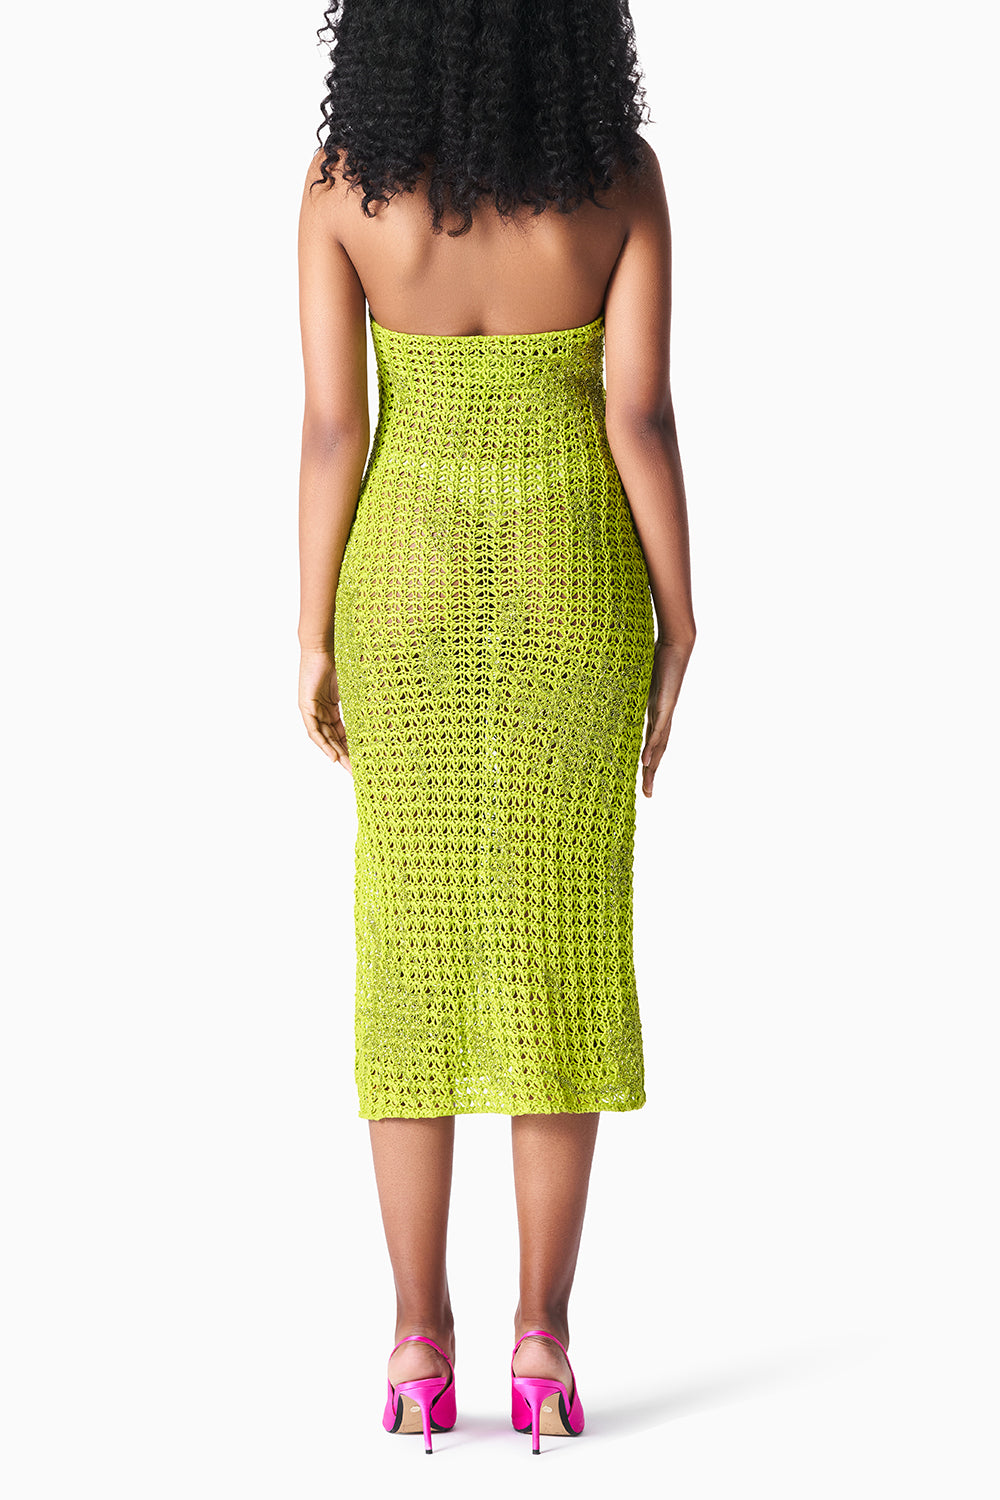 Chartreuse Linen Crocheted Dress